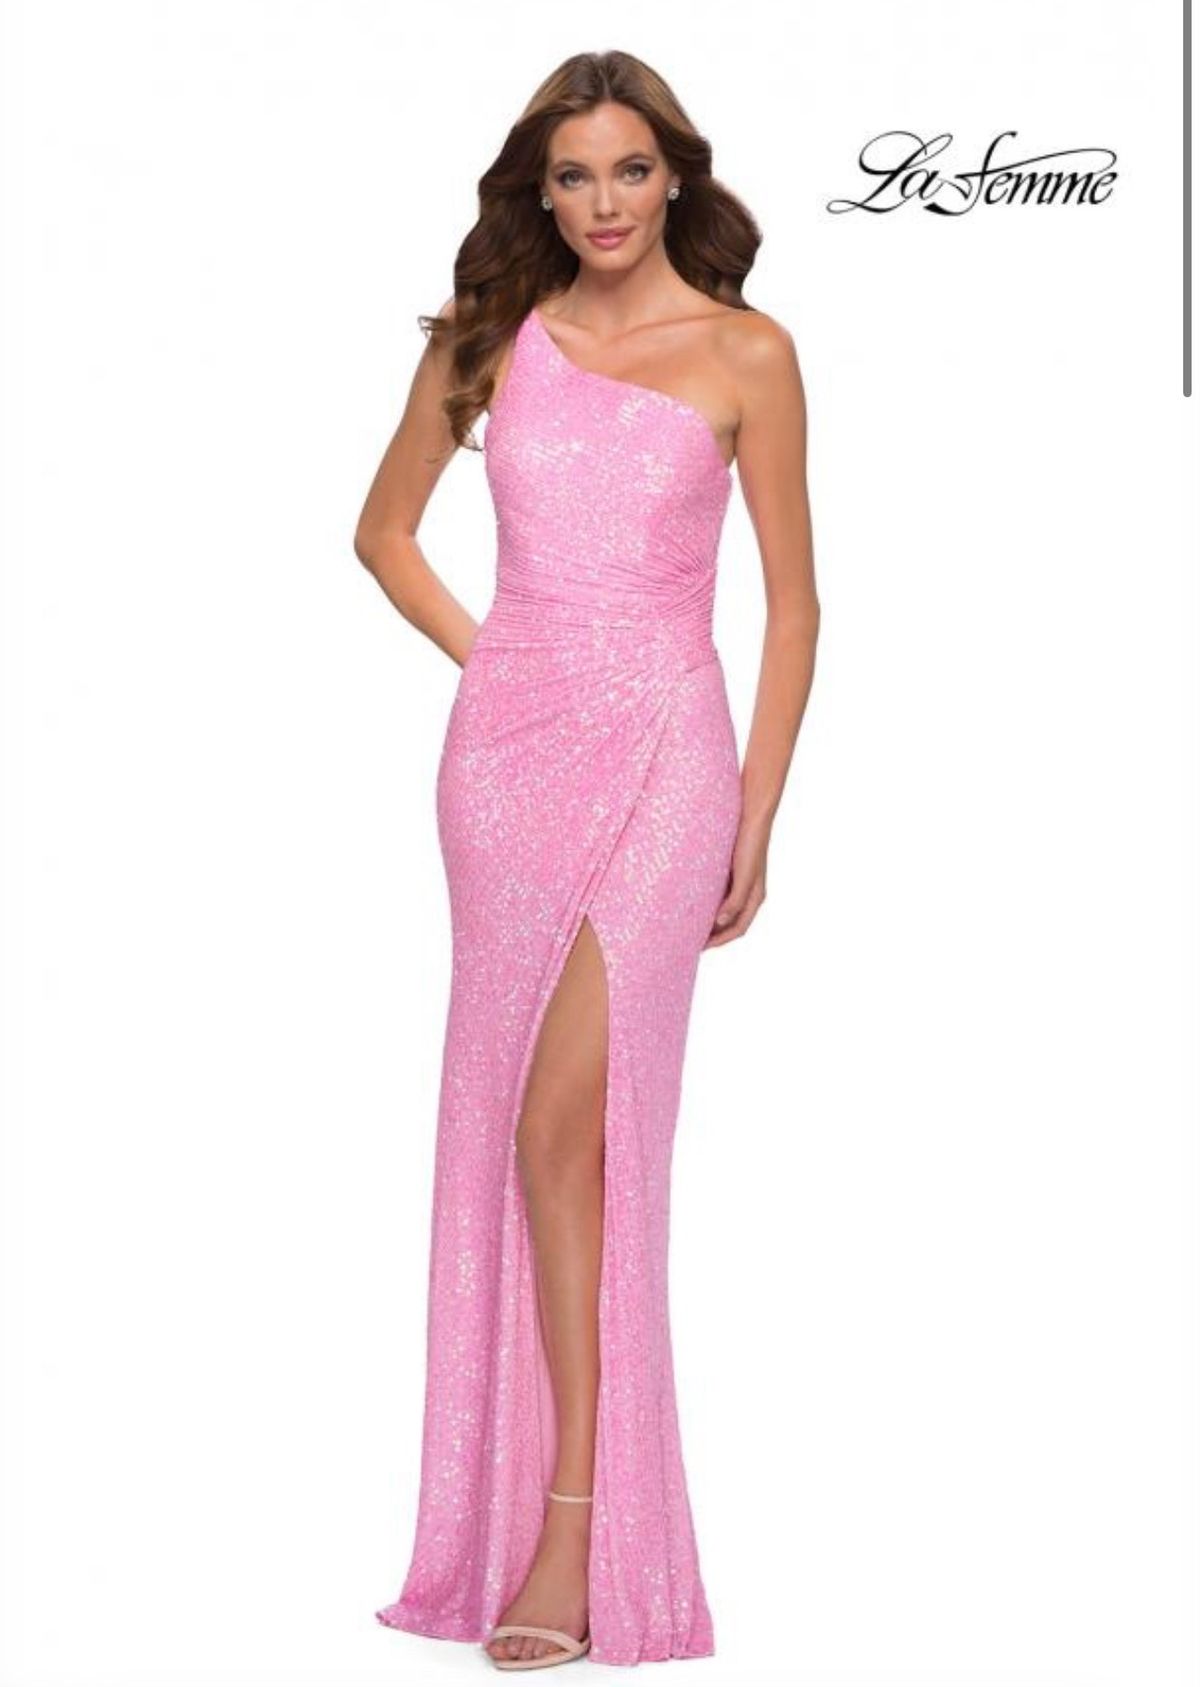 La Femme Size 4 Prom One Shoulder Pink Side Slit Dress on Queenly